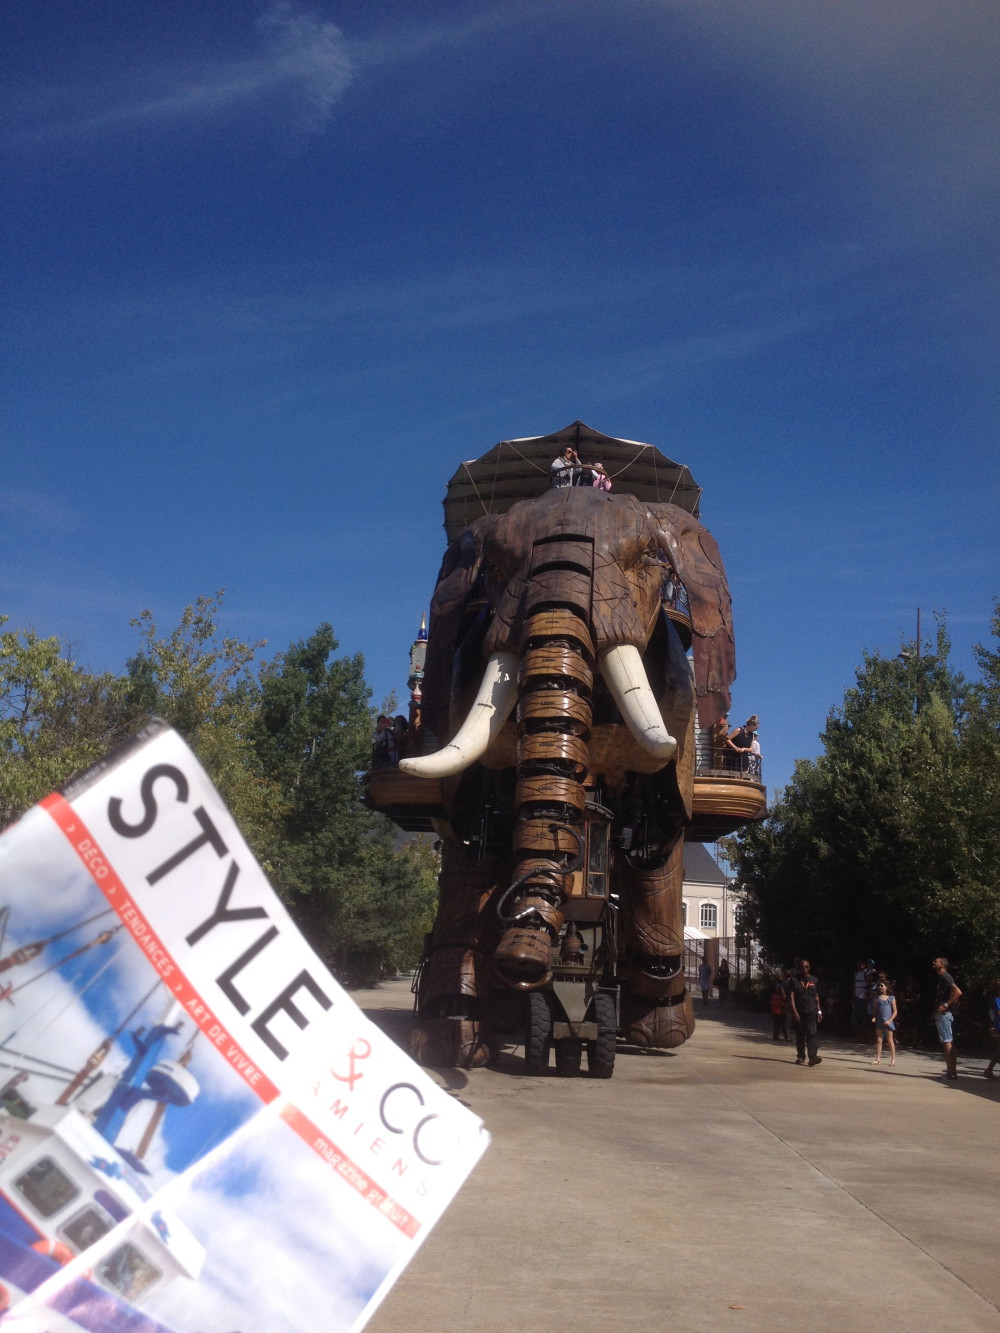 Le grand éléphant de 48 tonnes et de 12 mètres de haut se dirige vers moi, je crois qu'il a repéré mon STYLE&CO .... Le grand éléphant - Les machines de l'île -  Nantes.